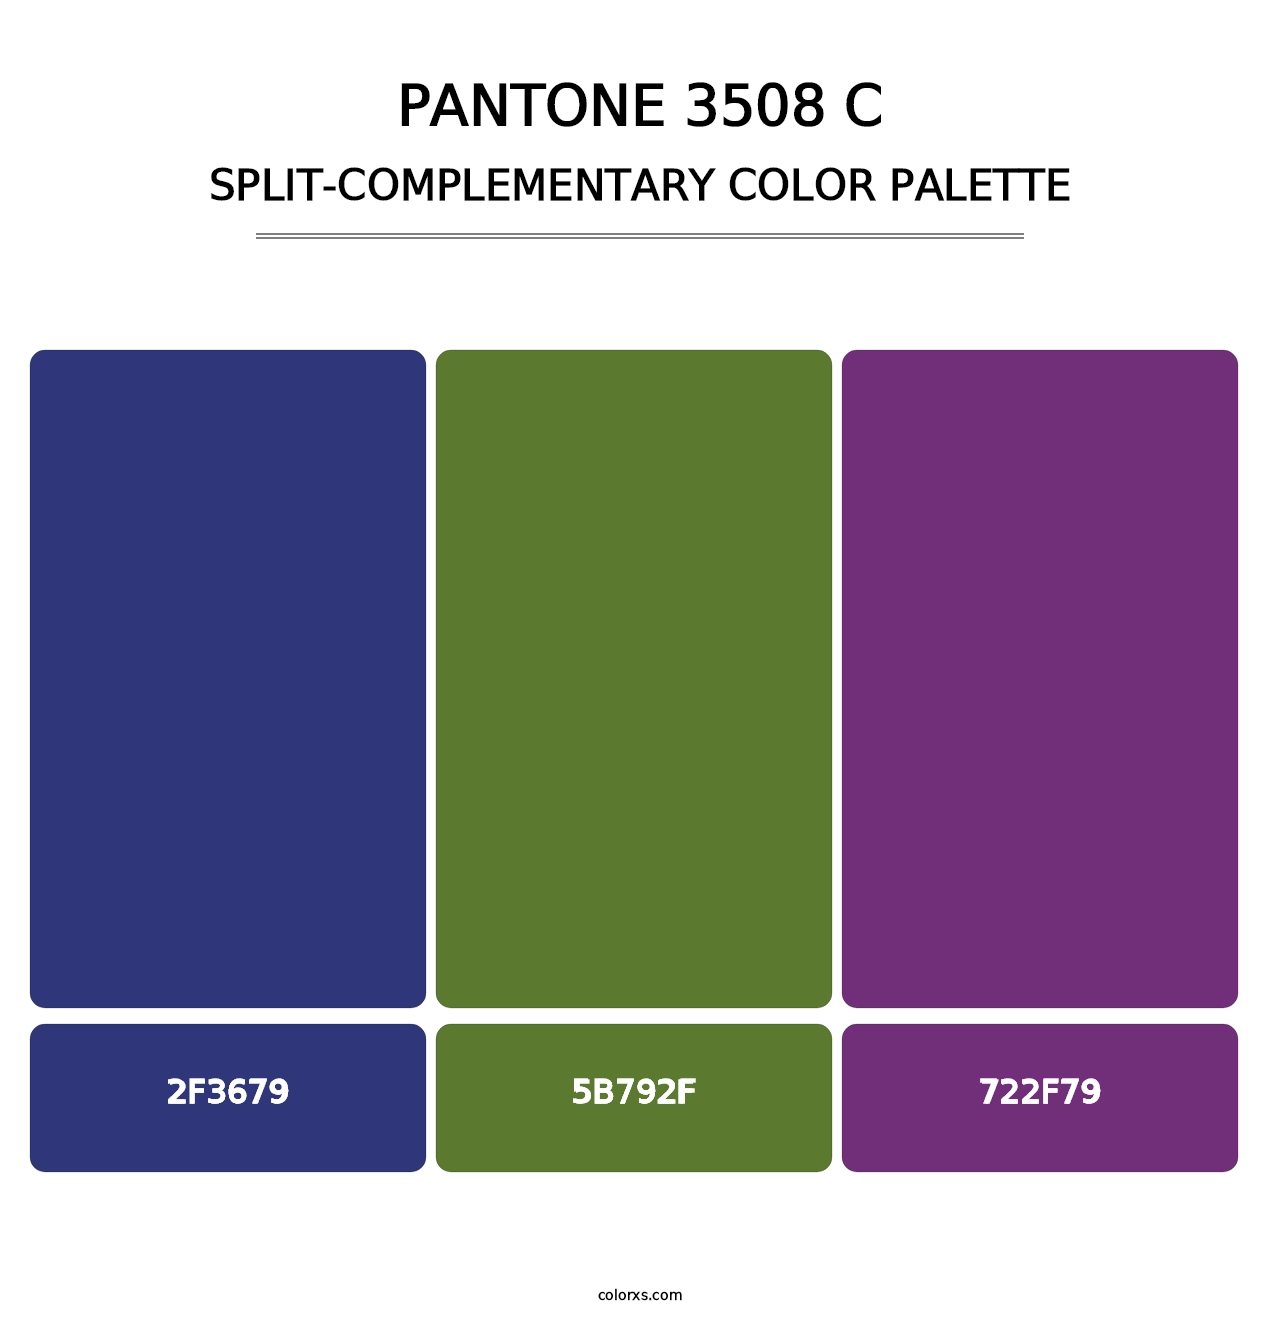 PANTONE 3508 C - Split-Complementary Color Palette